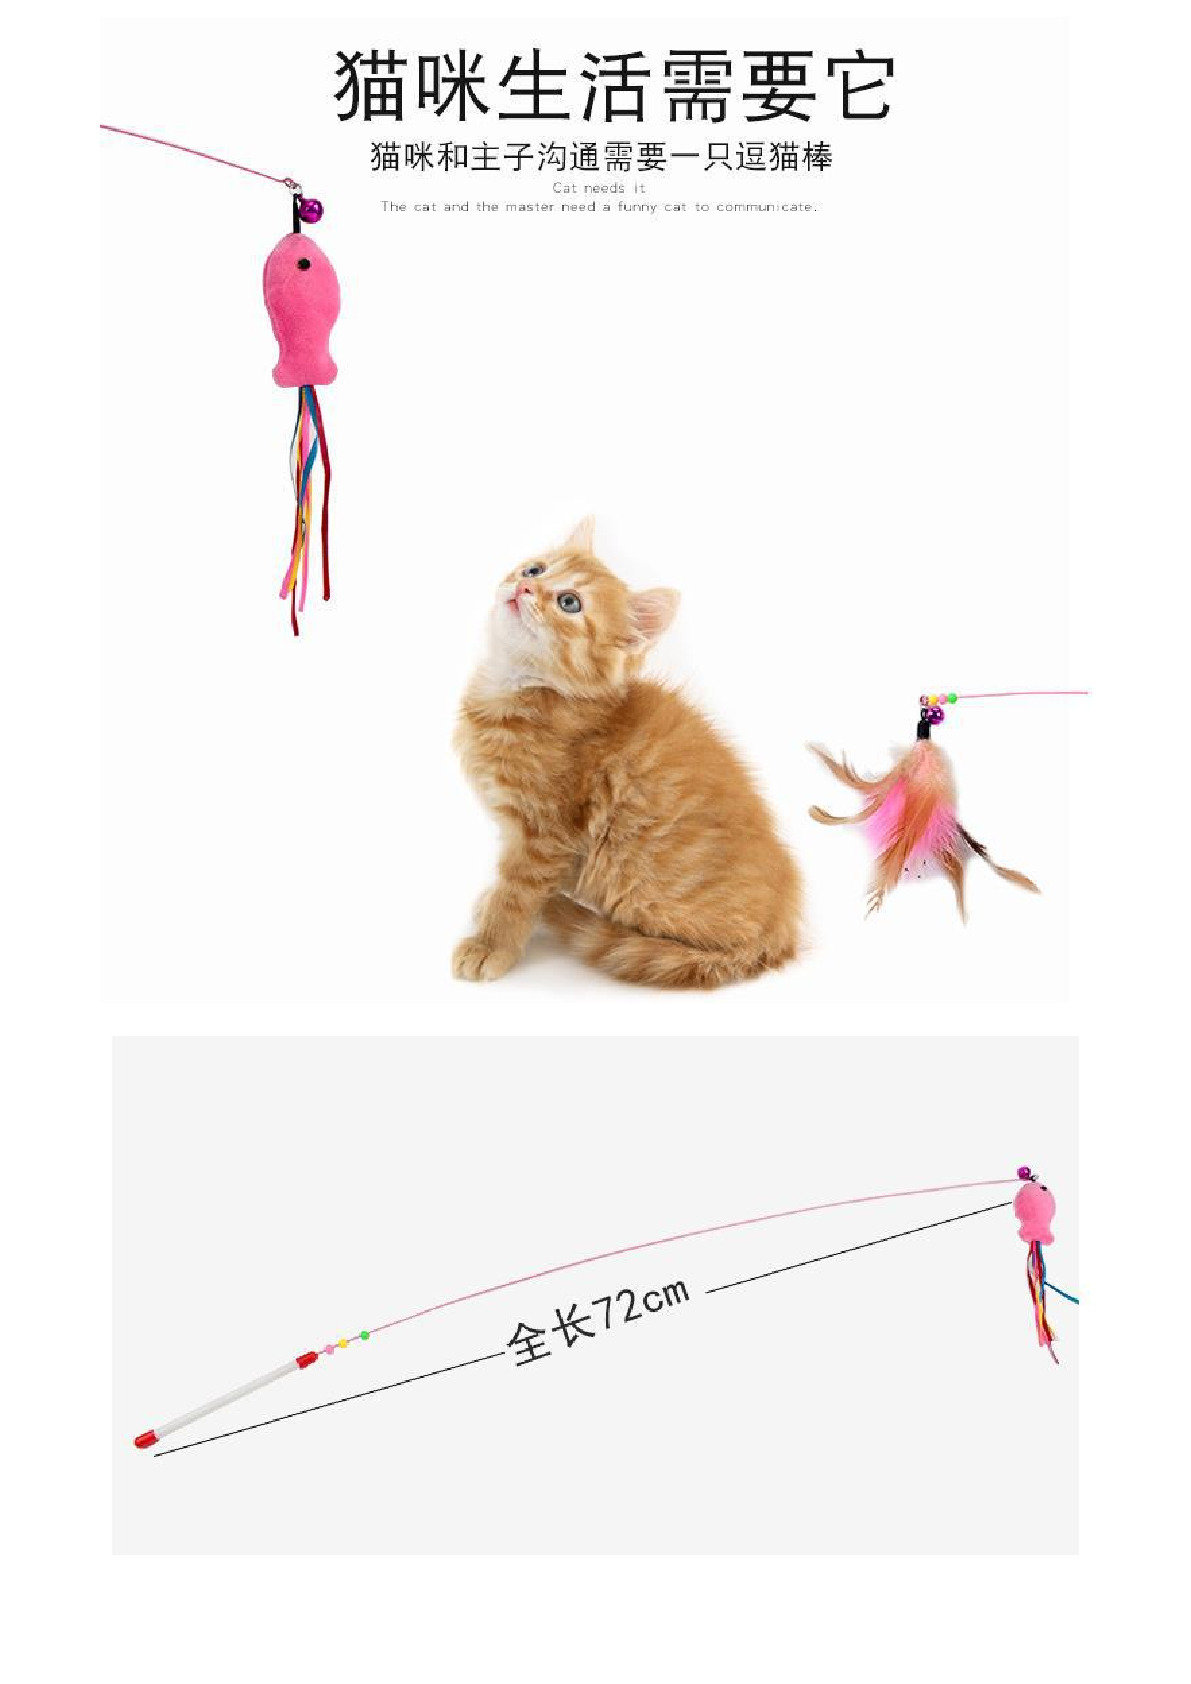 厂家直销猫玩具 高韧性金属钢丝逗猫棒 互动带铃铛羽毛逗猫棒详情图2